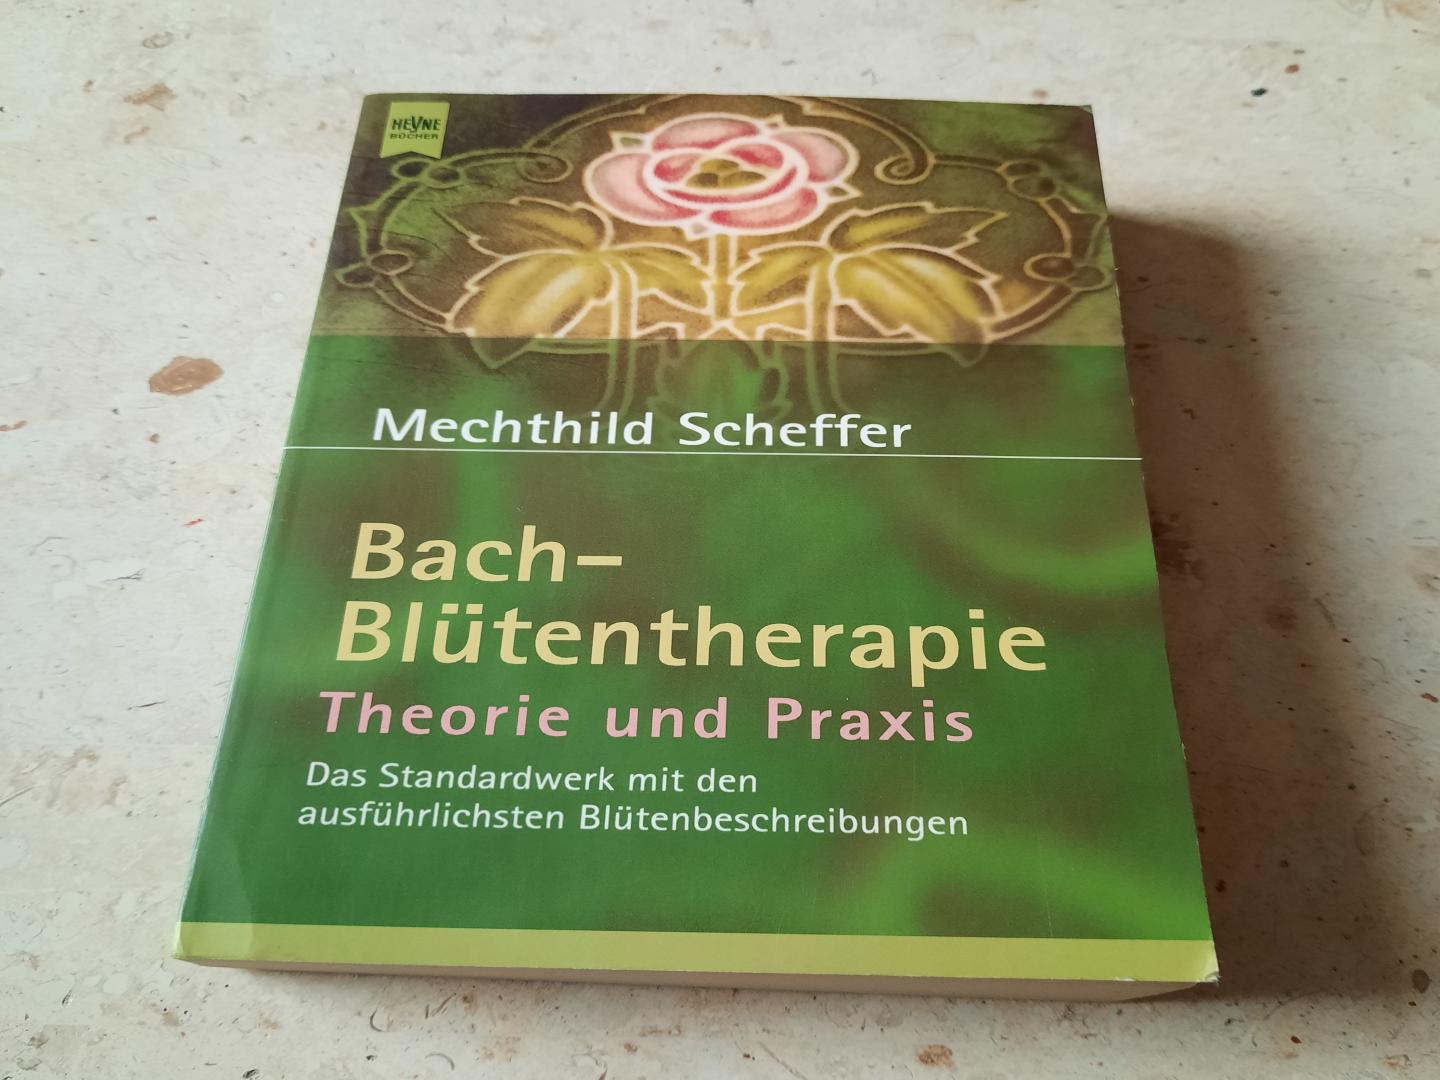 Mechthild Scheffer - Bach-Blütentherapie - Theorie und Praxis. Das Standardwerk mit den ausführlichsten Blütenbeschreibungen.